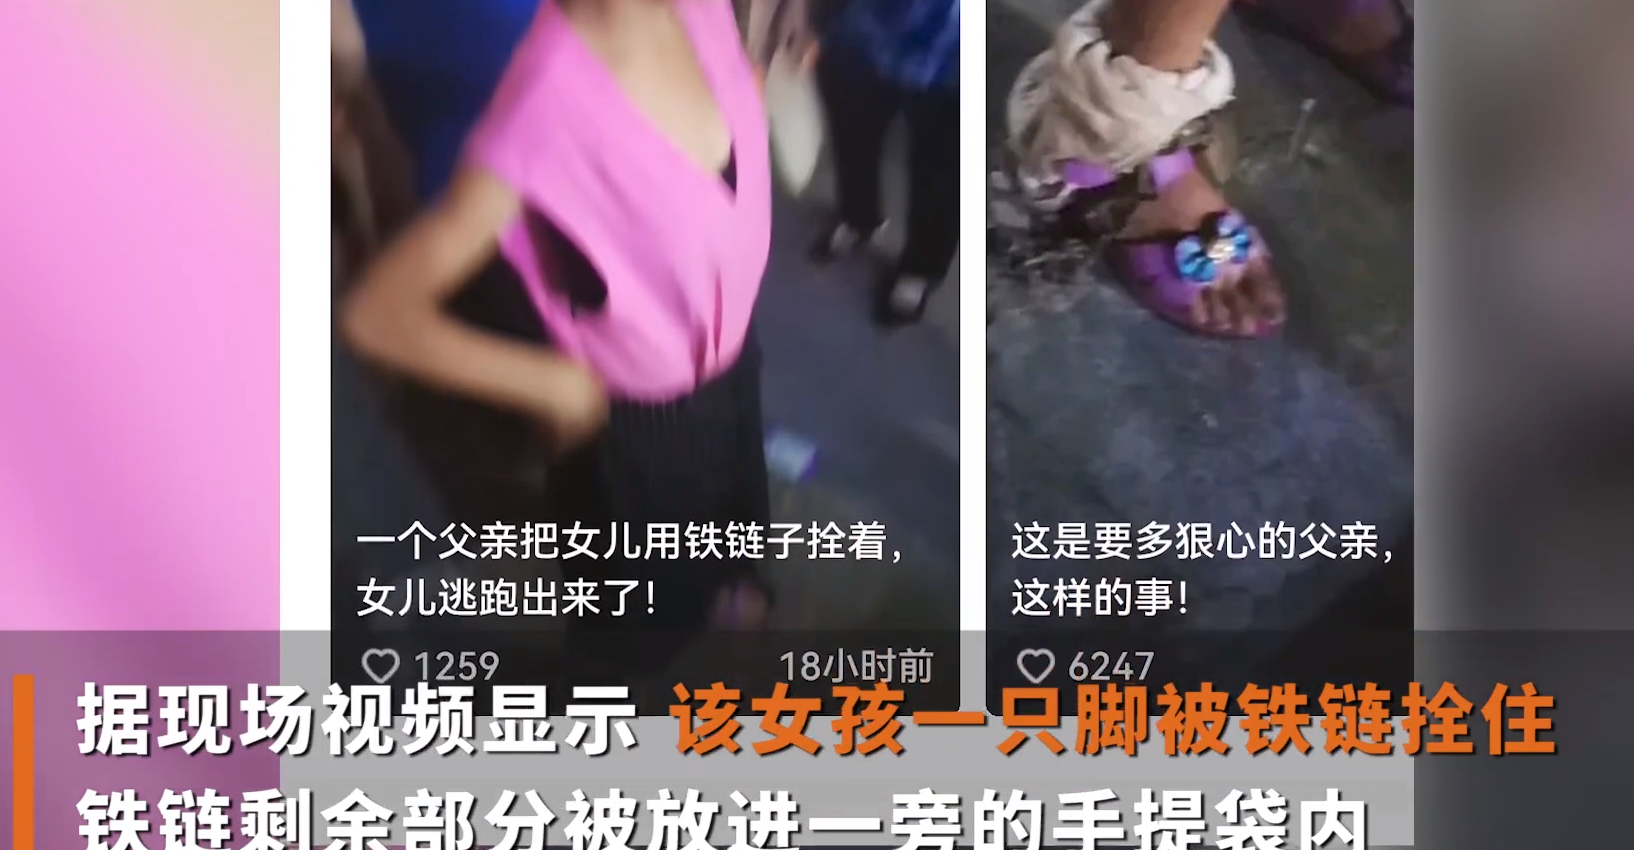 视频显示,该女孩一只脚被铁链拴住,铁链剩余部分被放进一旁的手提袋